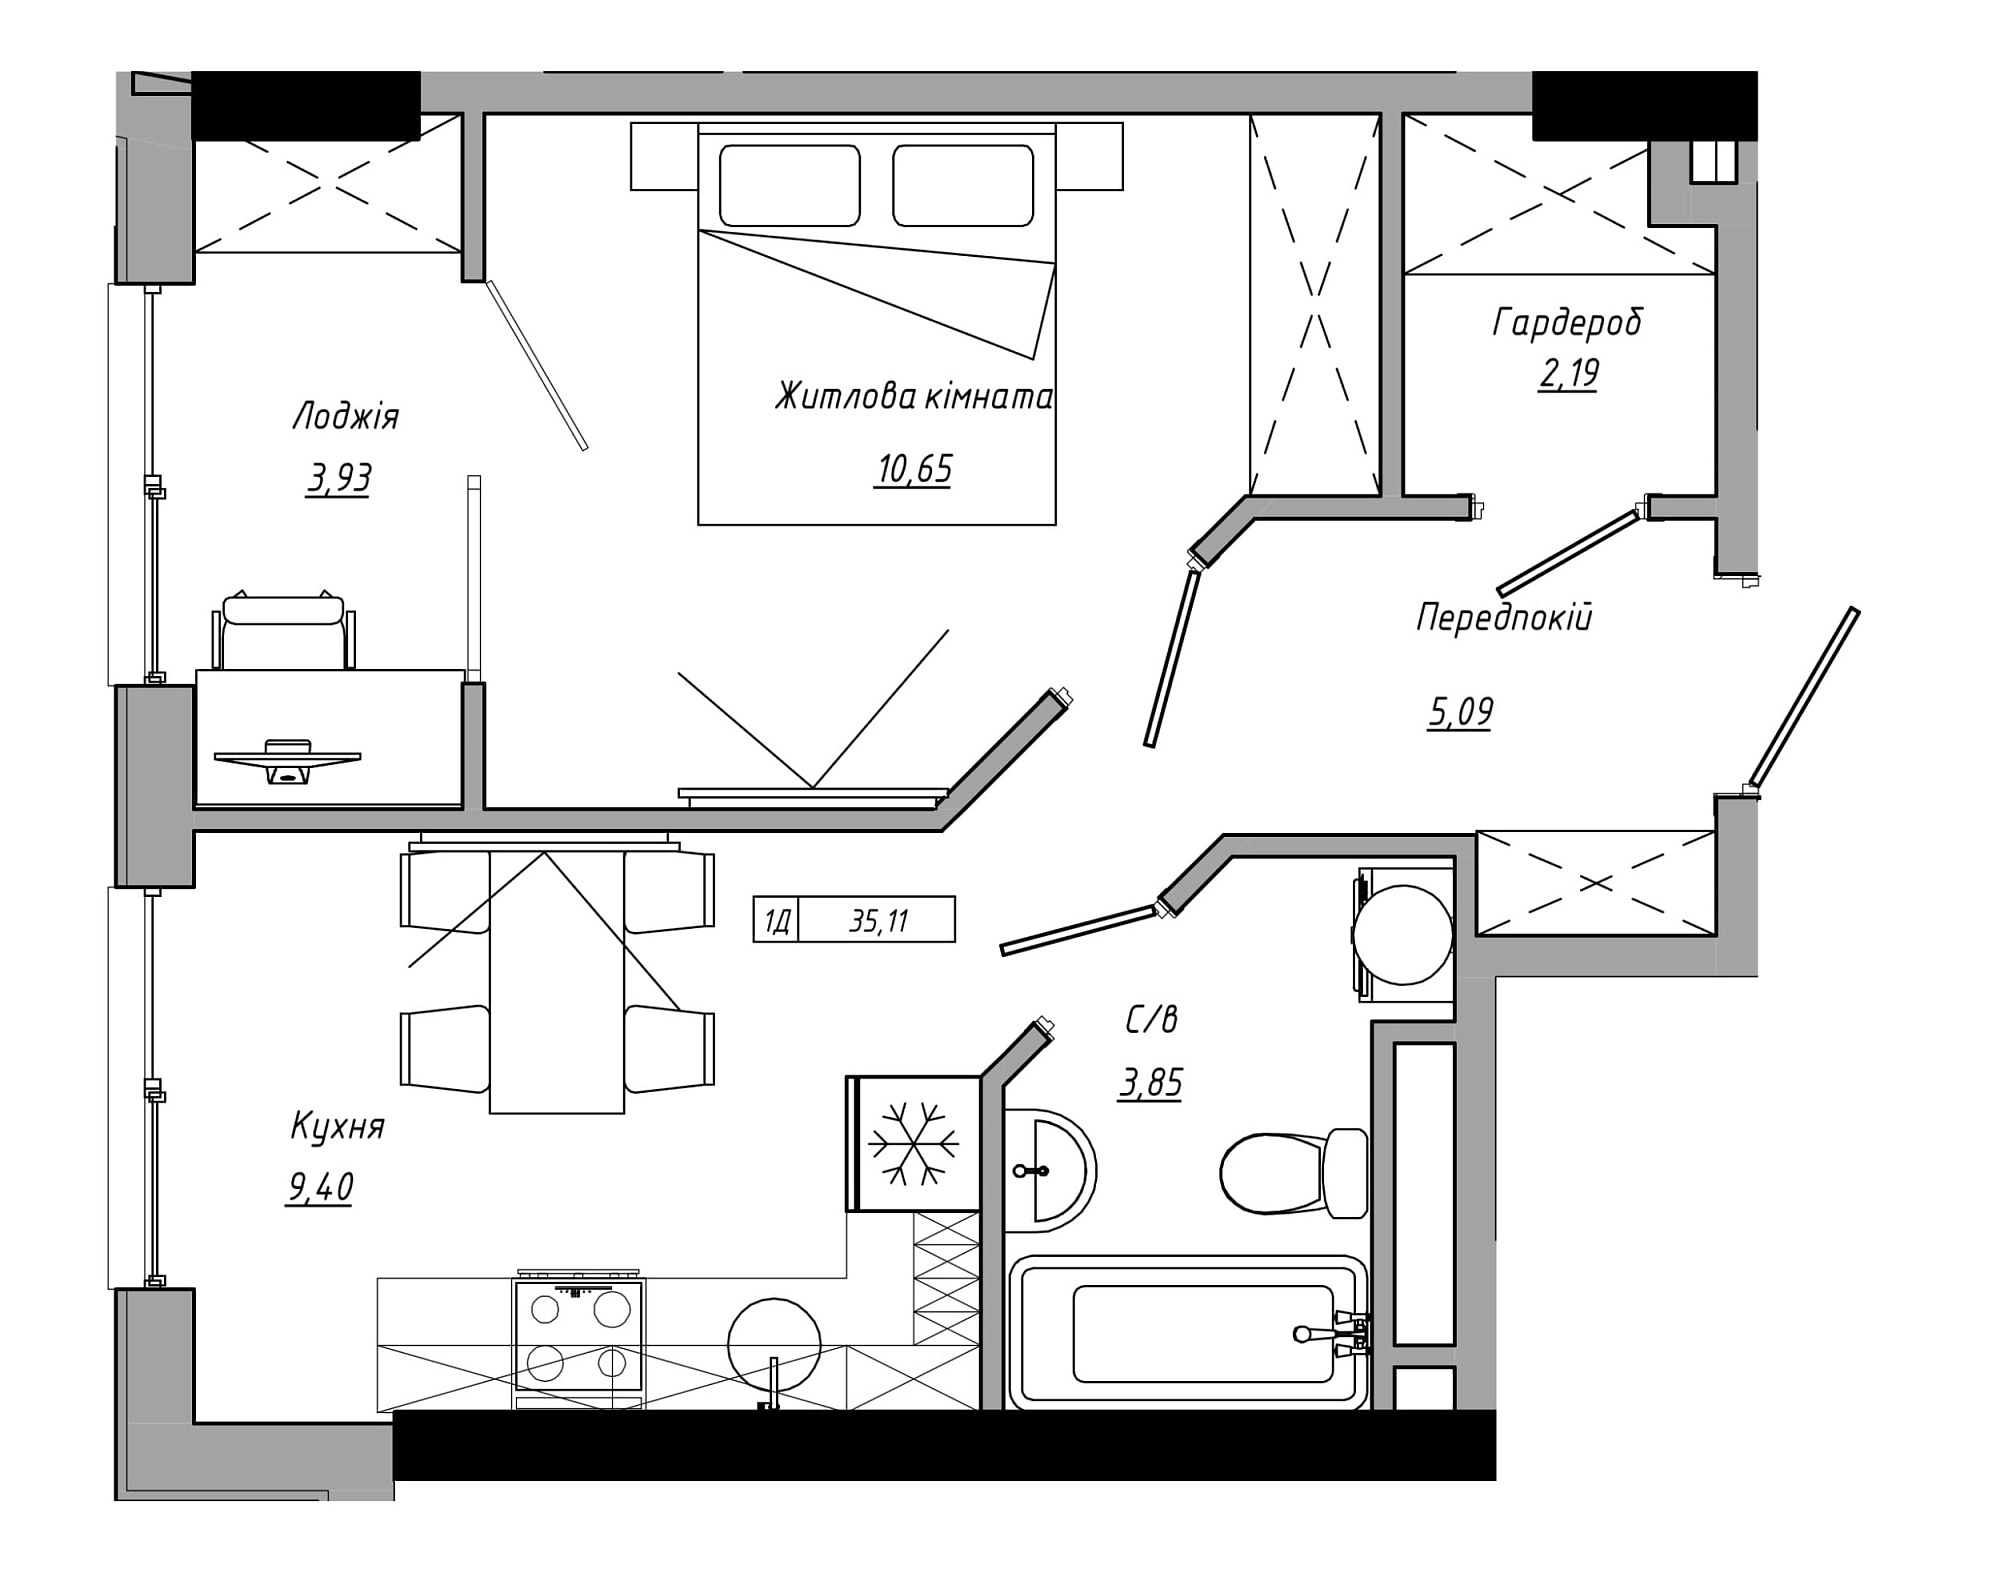 Планування 1-к квартира площею 35.11м2, AB-21-10/00006.